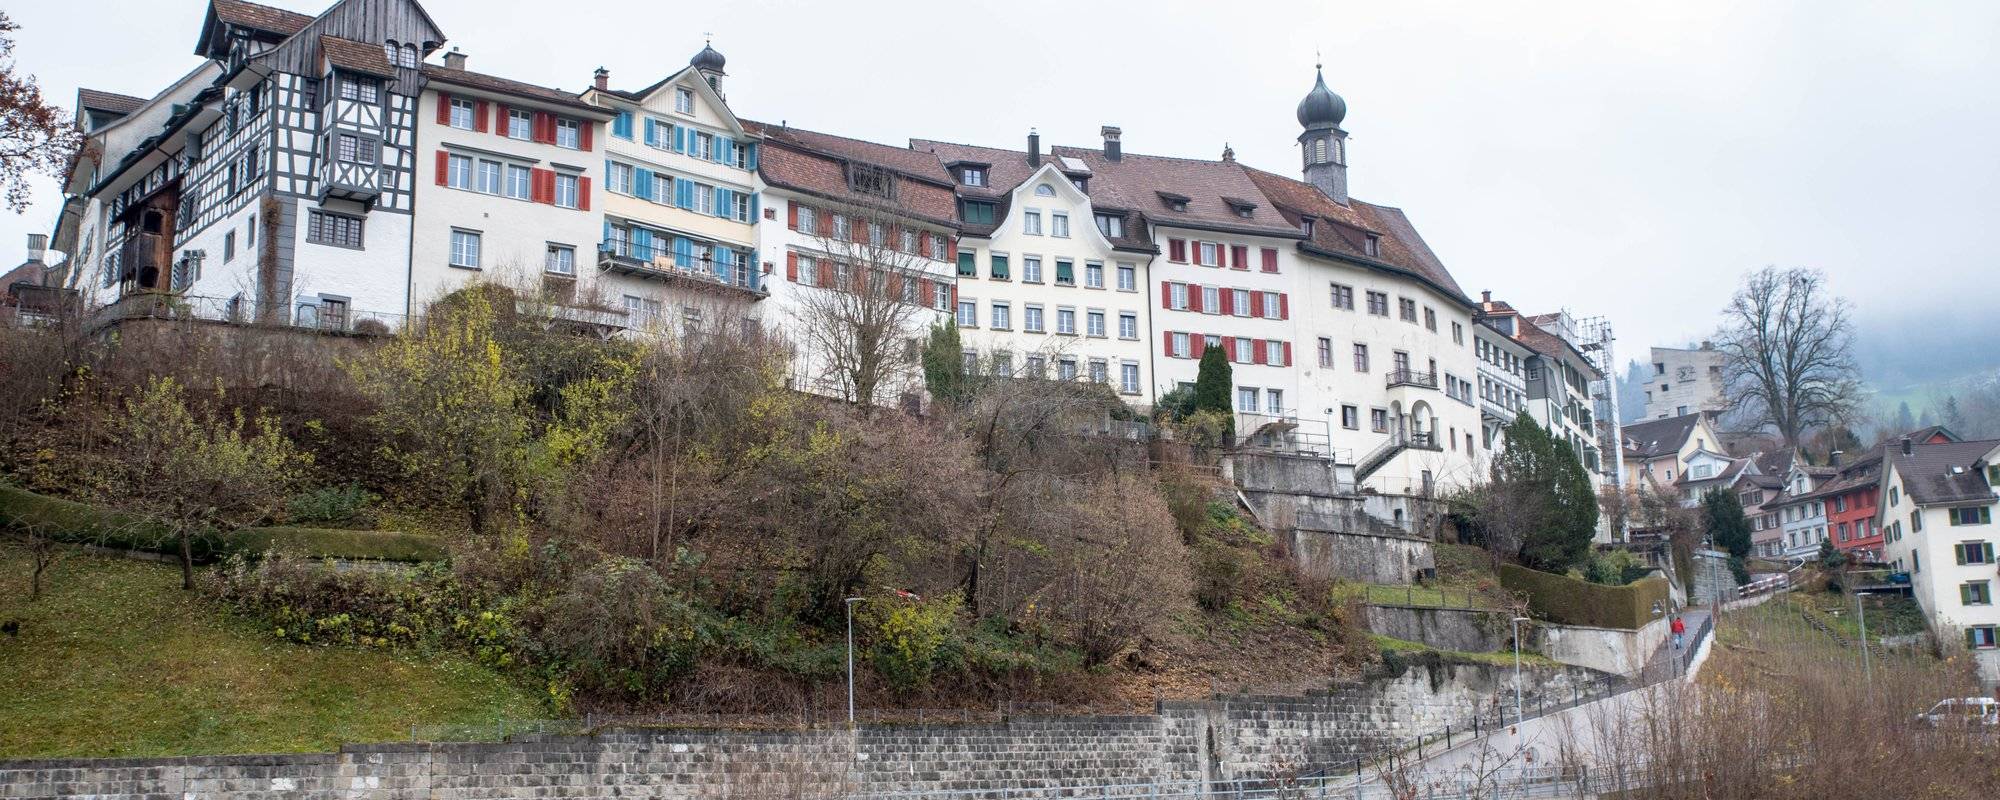 Lichtensteig - a charming medieval town